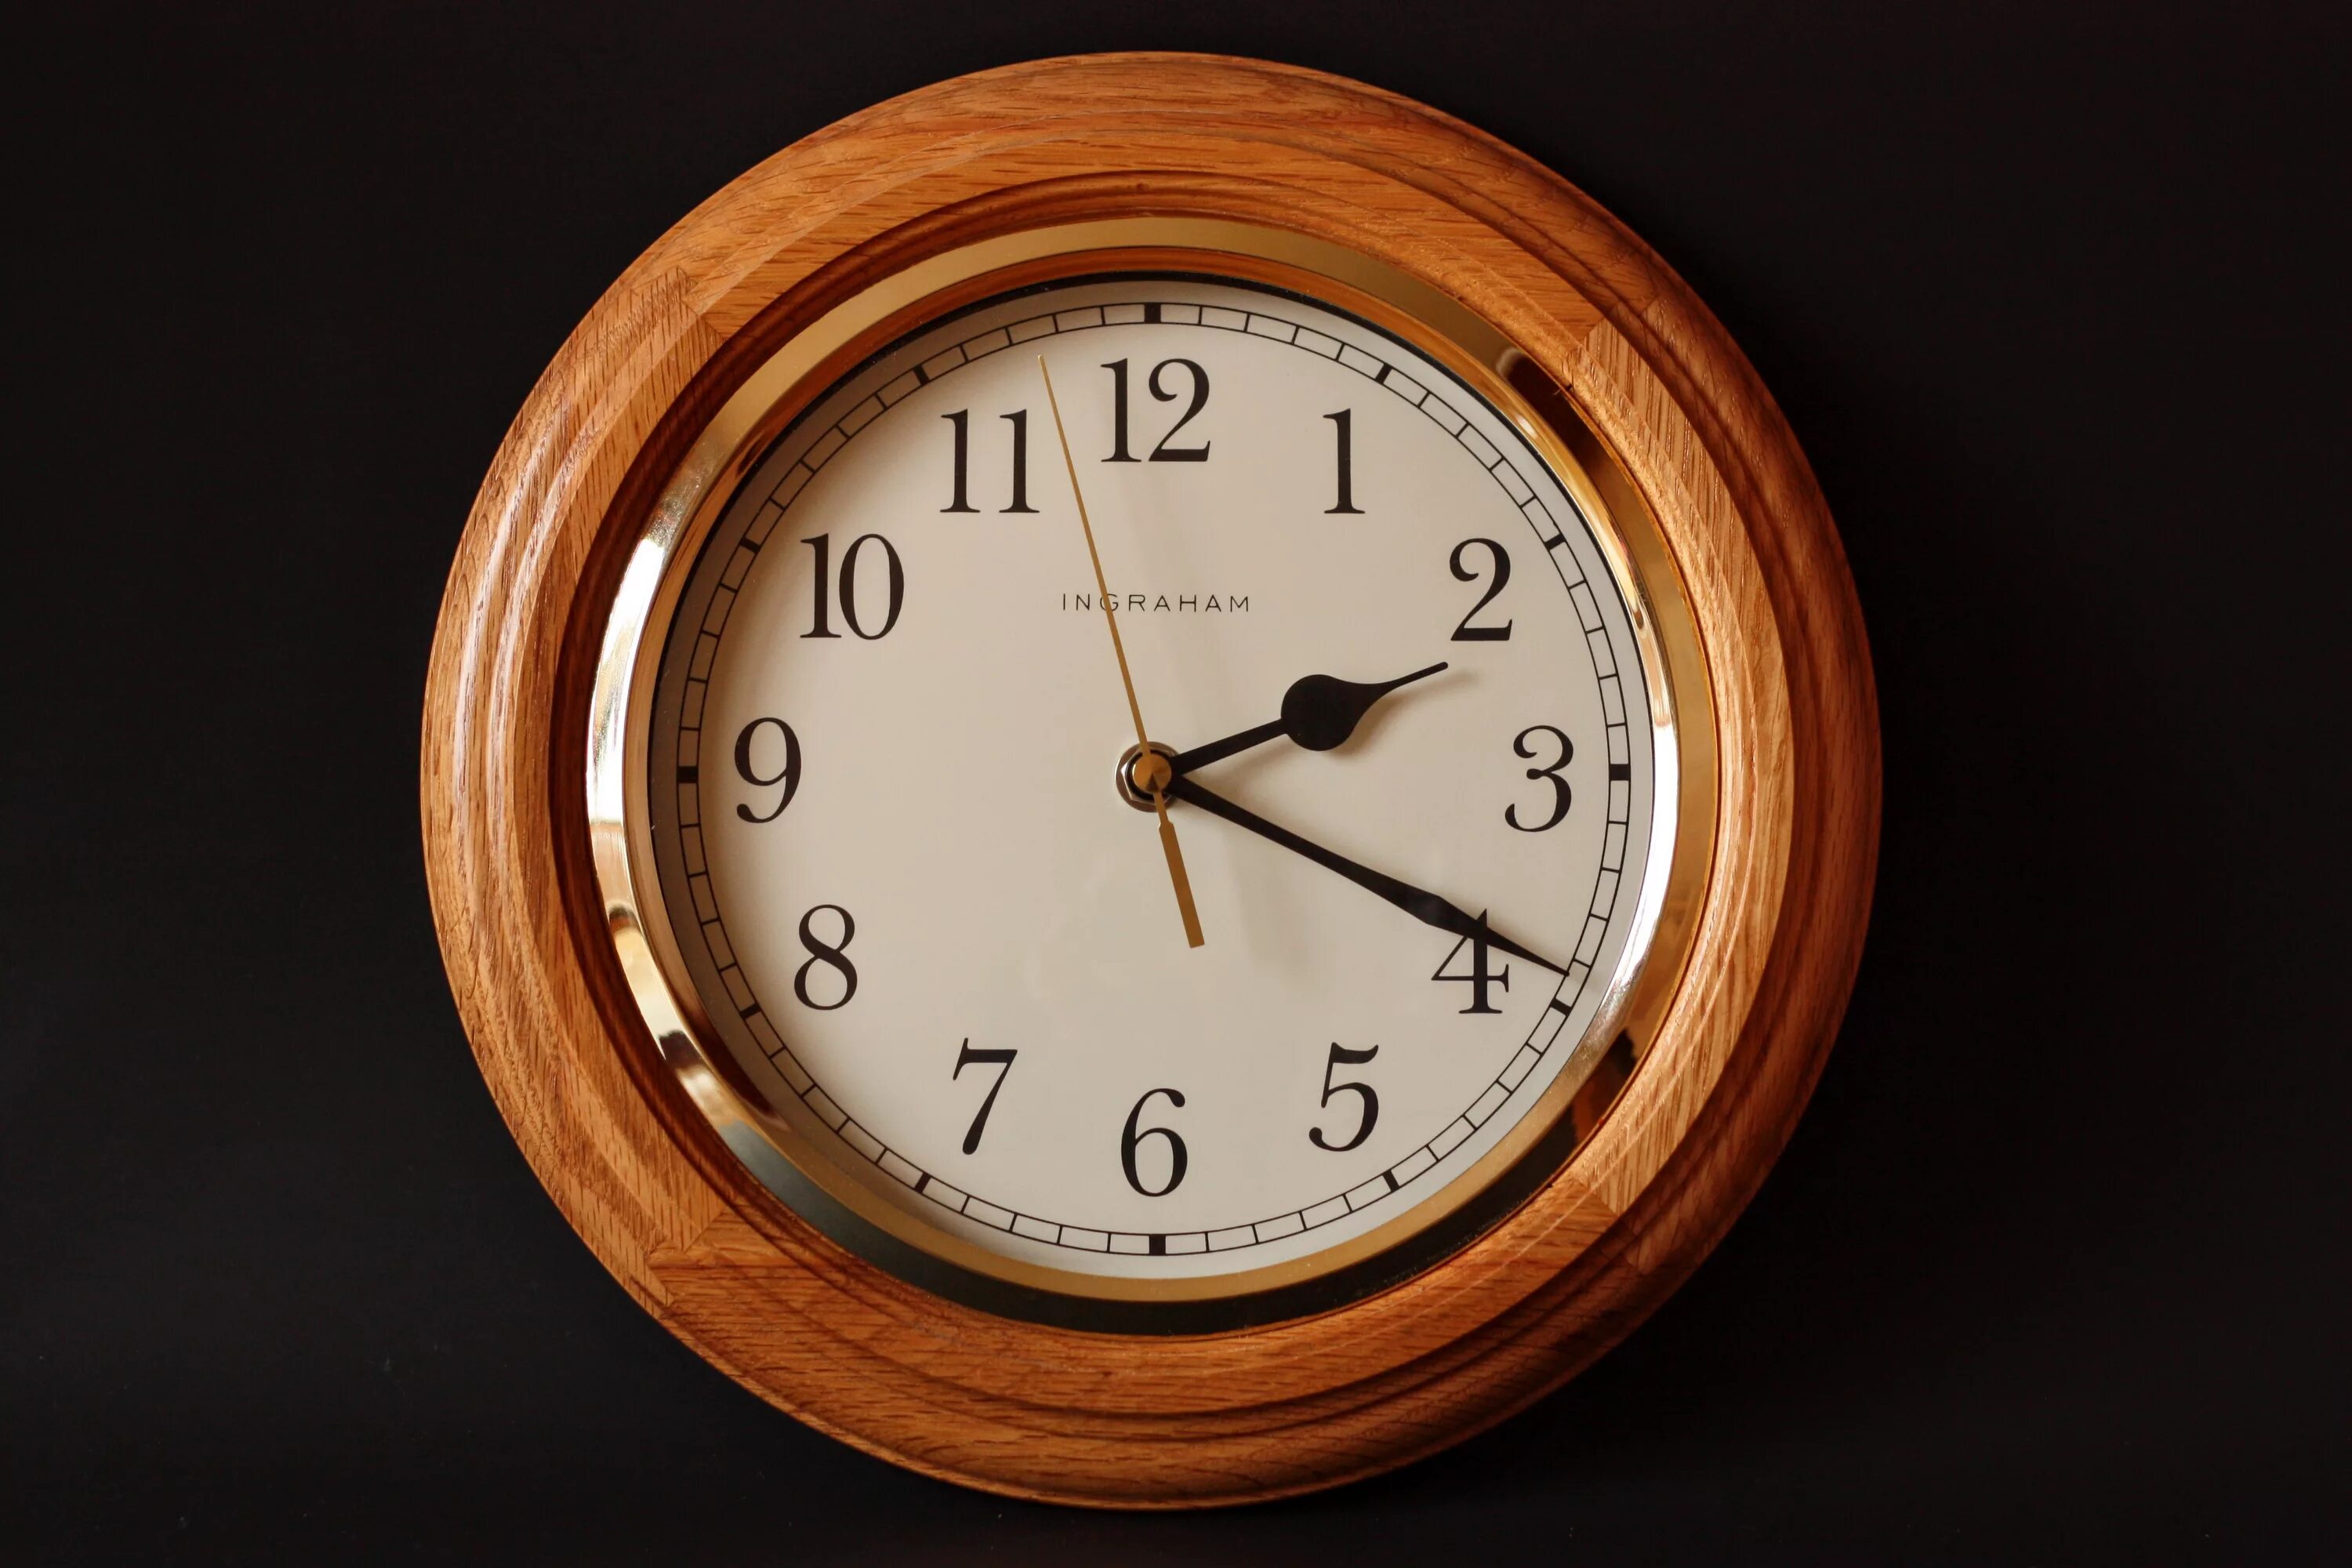 Westminster Chime часы Quartz. Часы механические настенные. Часы настенные деревянные. Часы классика. Время 14 57